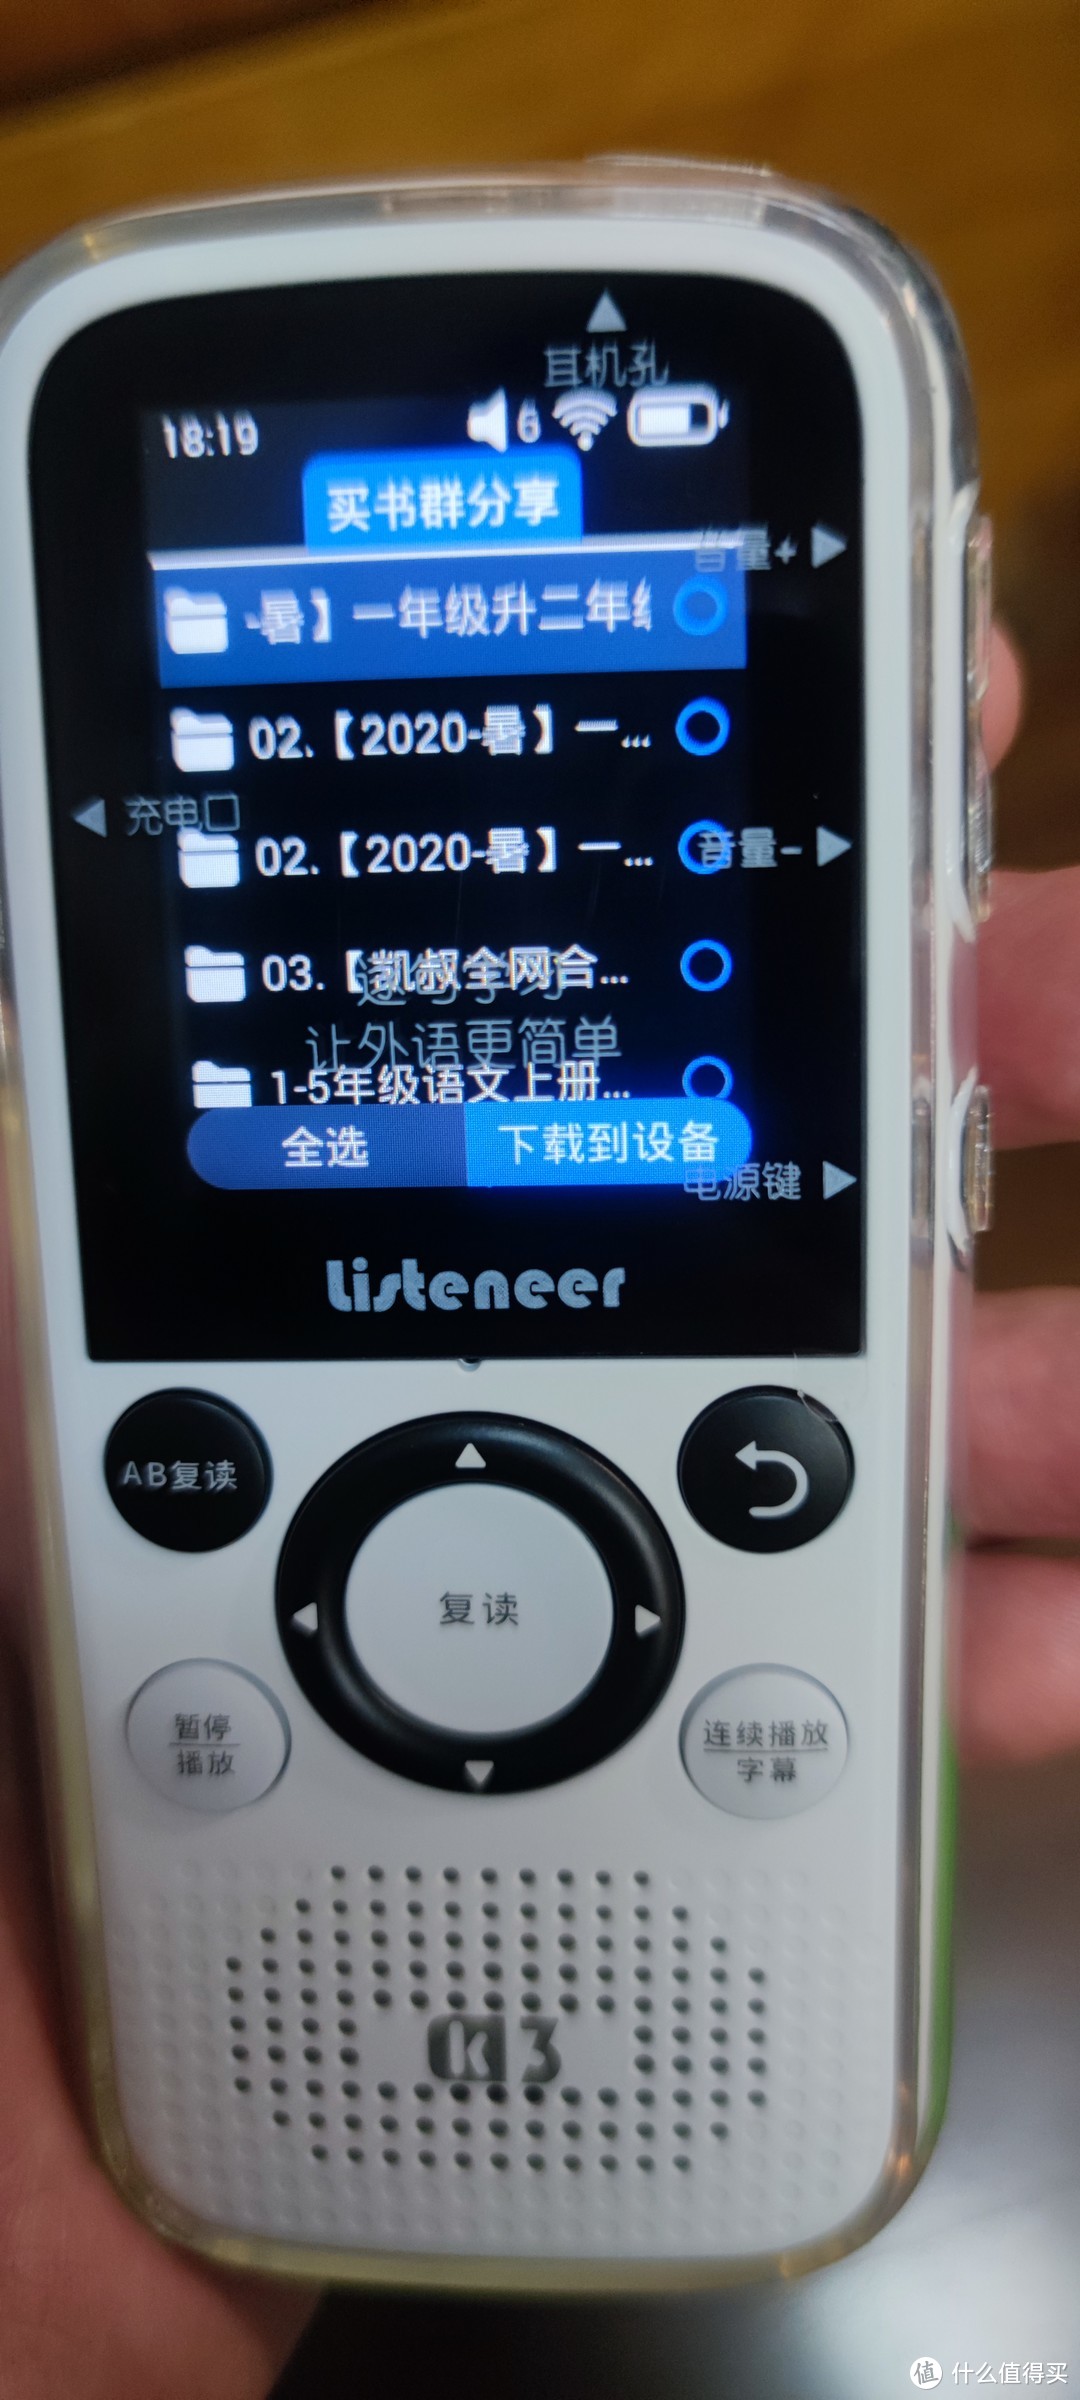 打开桌面上的百度云盘图标直接进入文件夹，中文显示正常，可以读取文件夹里的音频格式，在线播放或者下载到本机都可以选择。